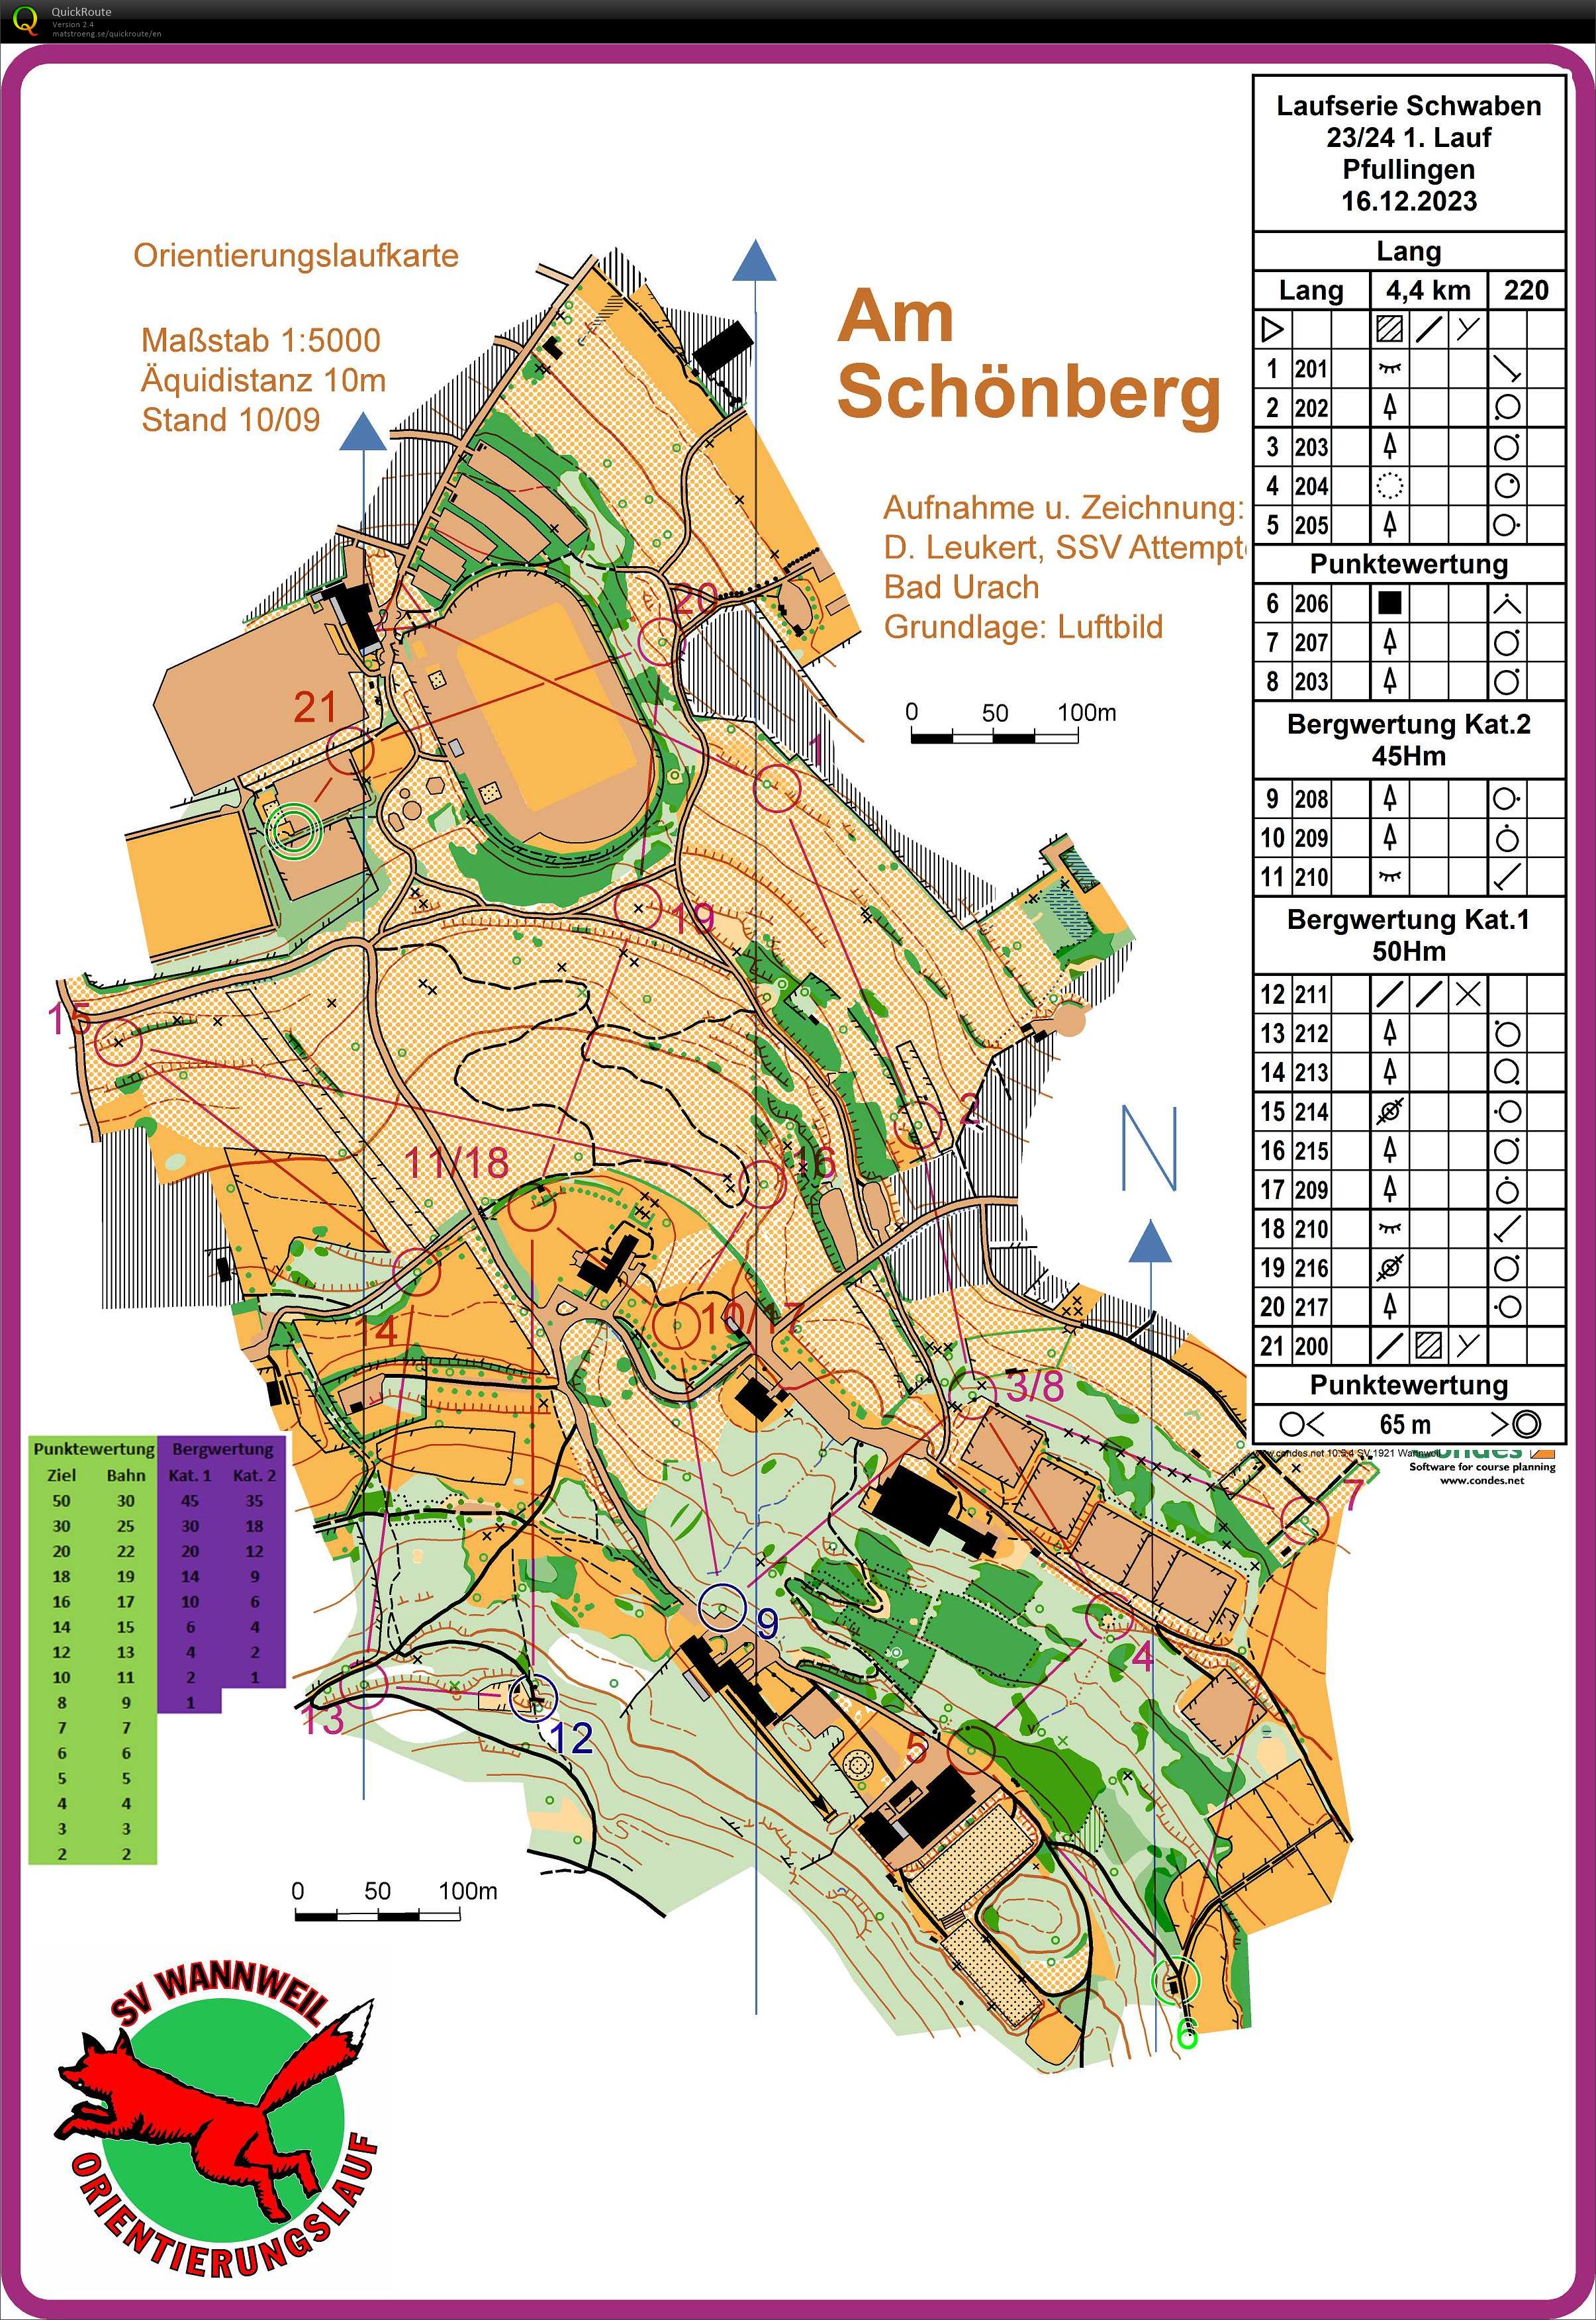 Laufserie Schwaben 23/24 1. Round Pfullingen (16/12/2023)